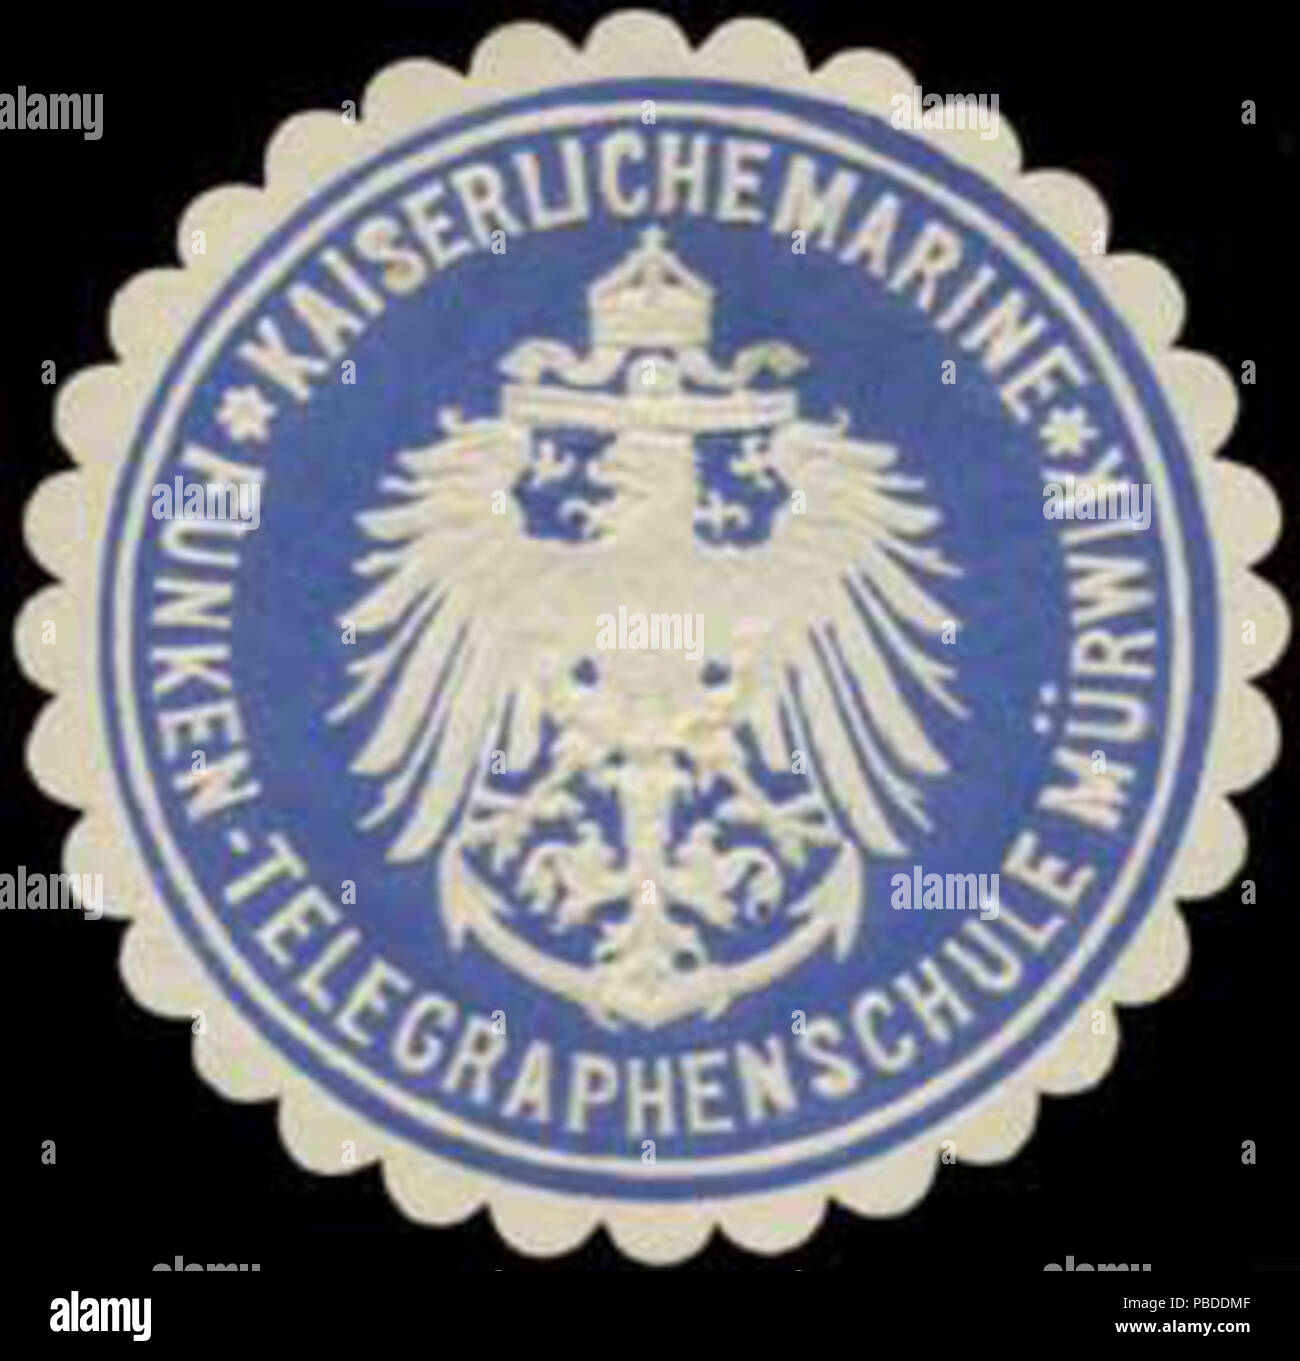 Alte Briefverschlussmarke aus Papier, welche seit ca. 1850 von Behoerden, Anwaelten, Notaren und Firmen zum verschliessen der Post verwendet wurde. 1409 Siegelmarke K. Marine Mürwik Funken-Telegraphenschule W0357543 Foto Stock